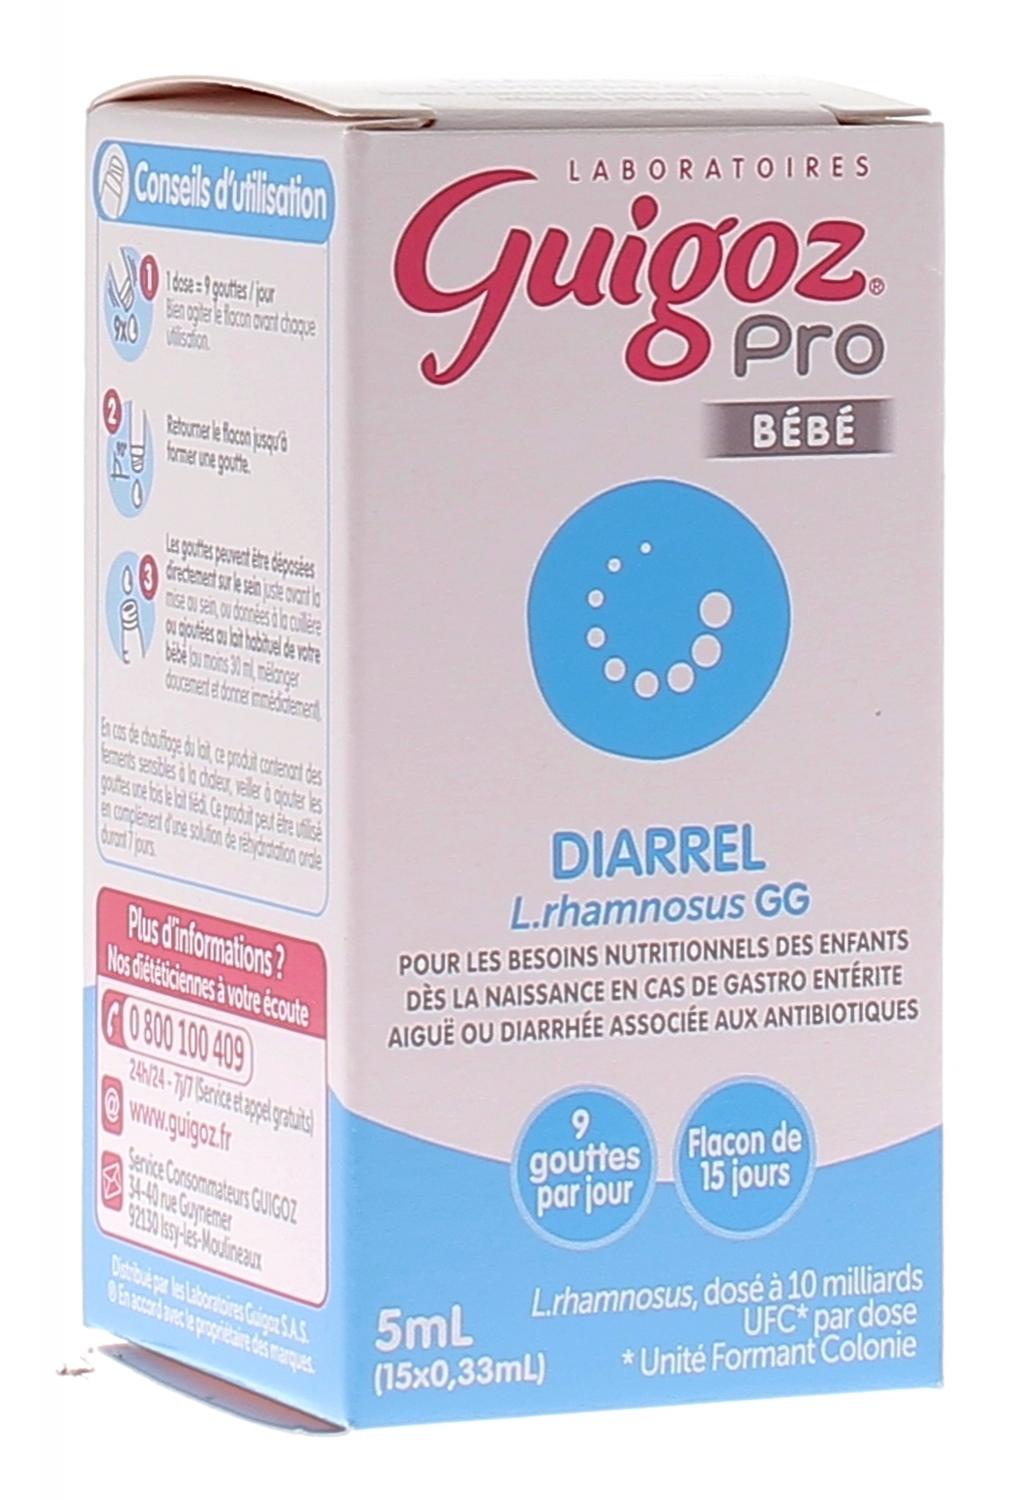 Pro Bébé Diarrel Guigoz - flacon de 5ml